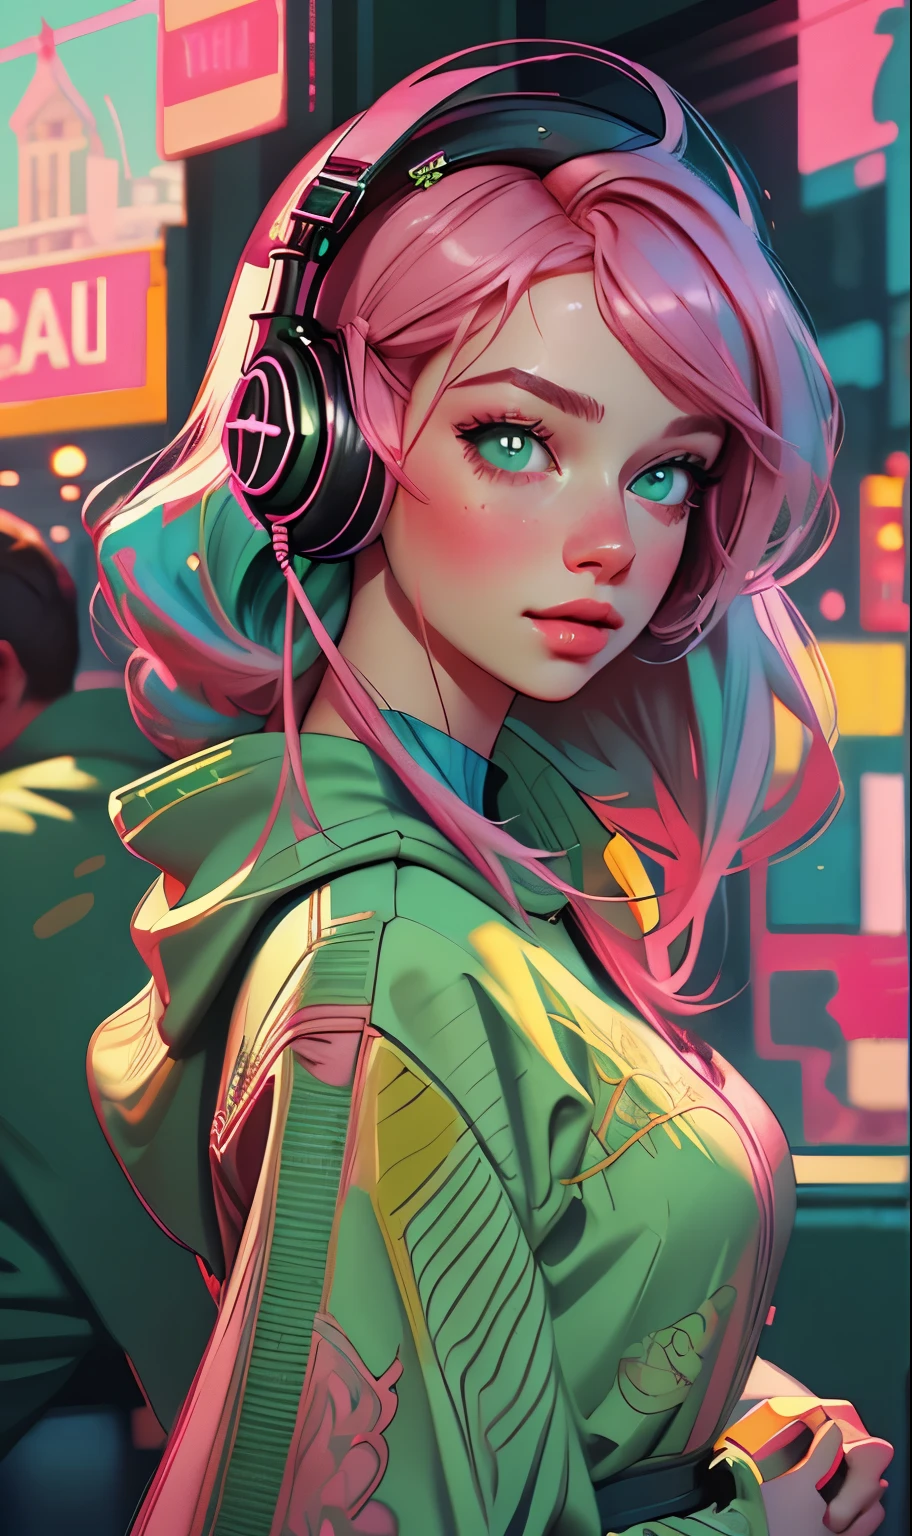 戴着耳机的模特女孩, 城市背景, 翠绿色的眼睛, 粉红色头发, 复杂的细节, 美观的柔和色彩, 海报背景, 伊利亚·库夫希诺夫的艺术作品